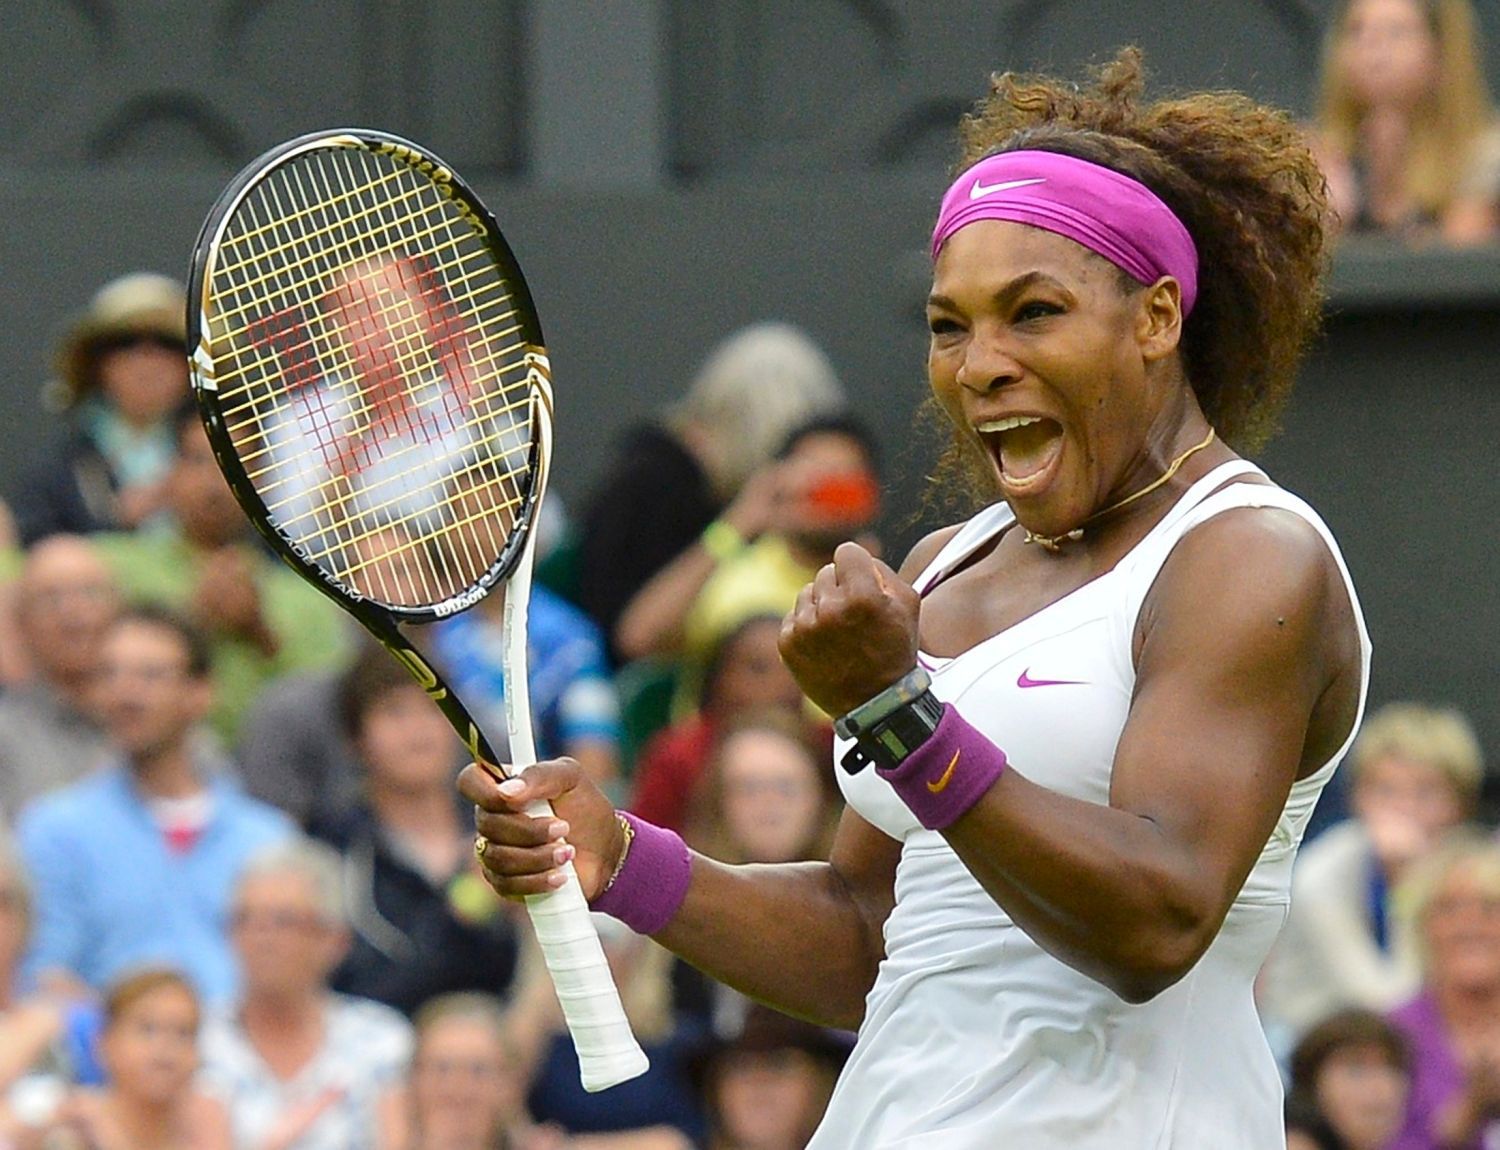 Americká tenistka Serena Williamsová se raduje z vítězství nad Češkou Petrou Kvitovou ve čtvrtfinále Wimbledonu 2012.